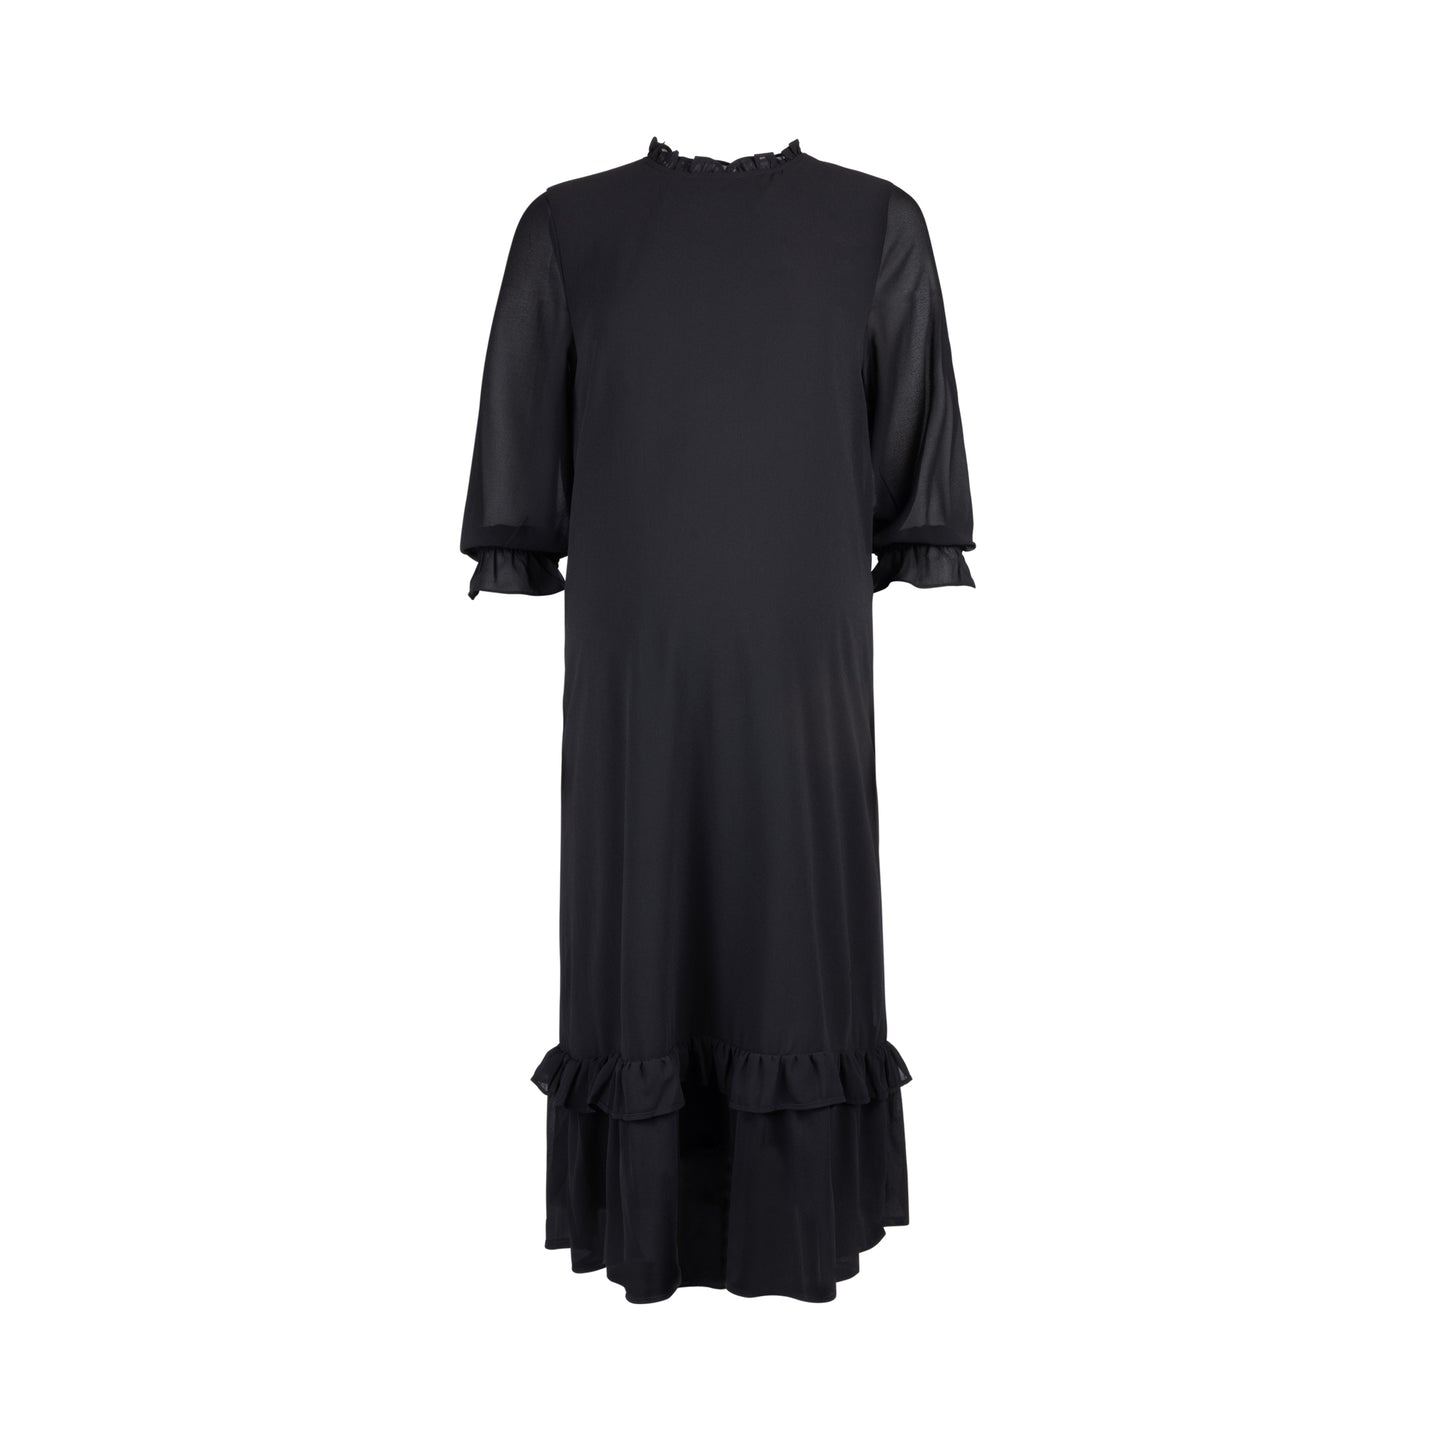 Chiffon Ruffle Dress Black-Dressy Collection